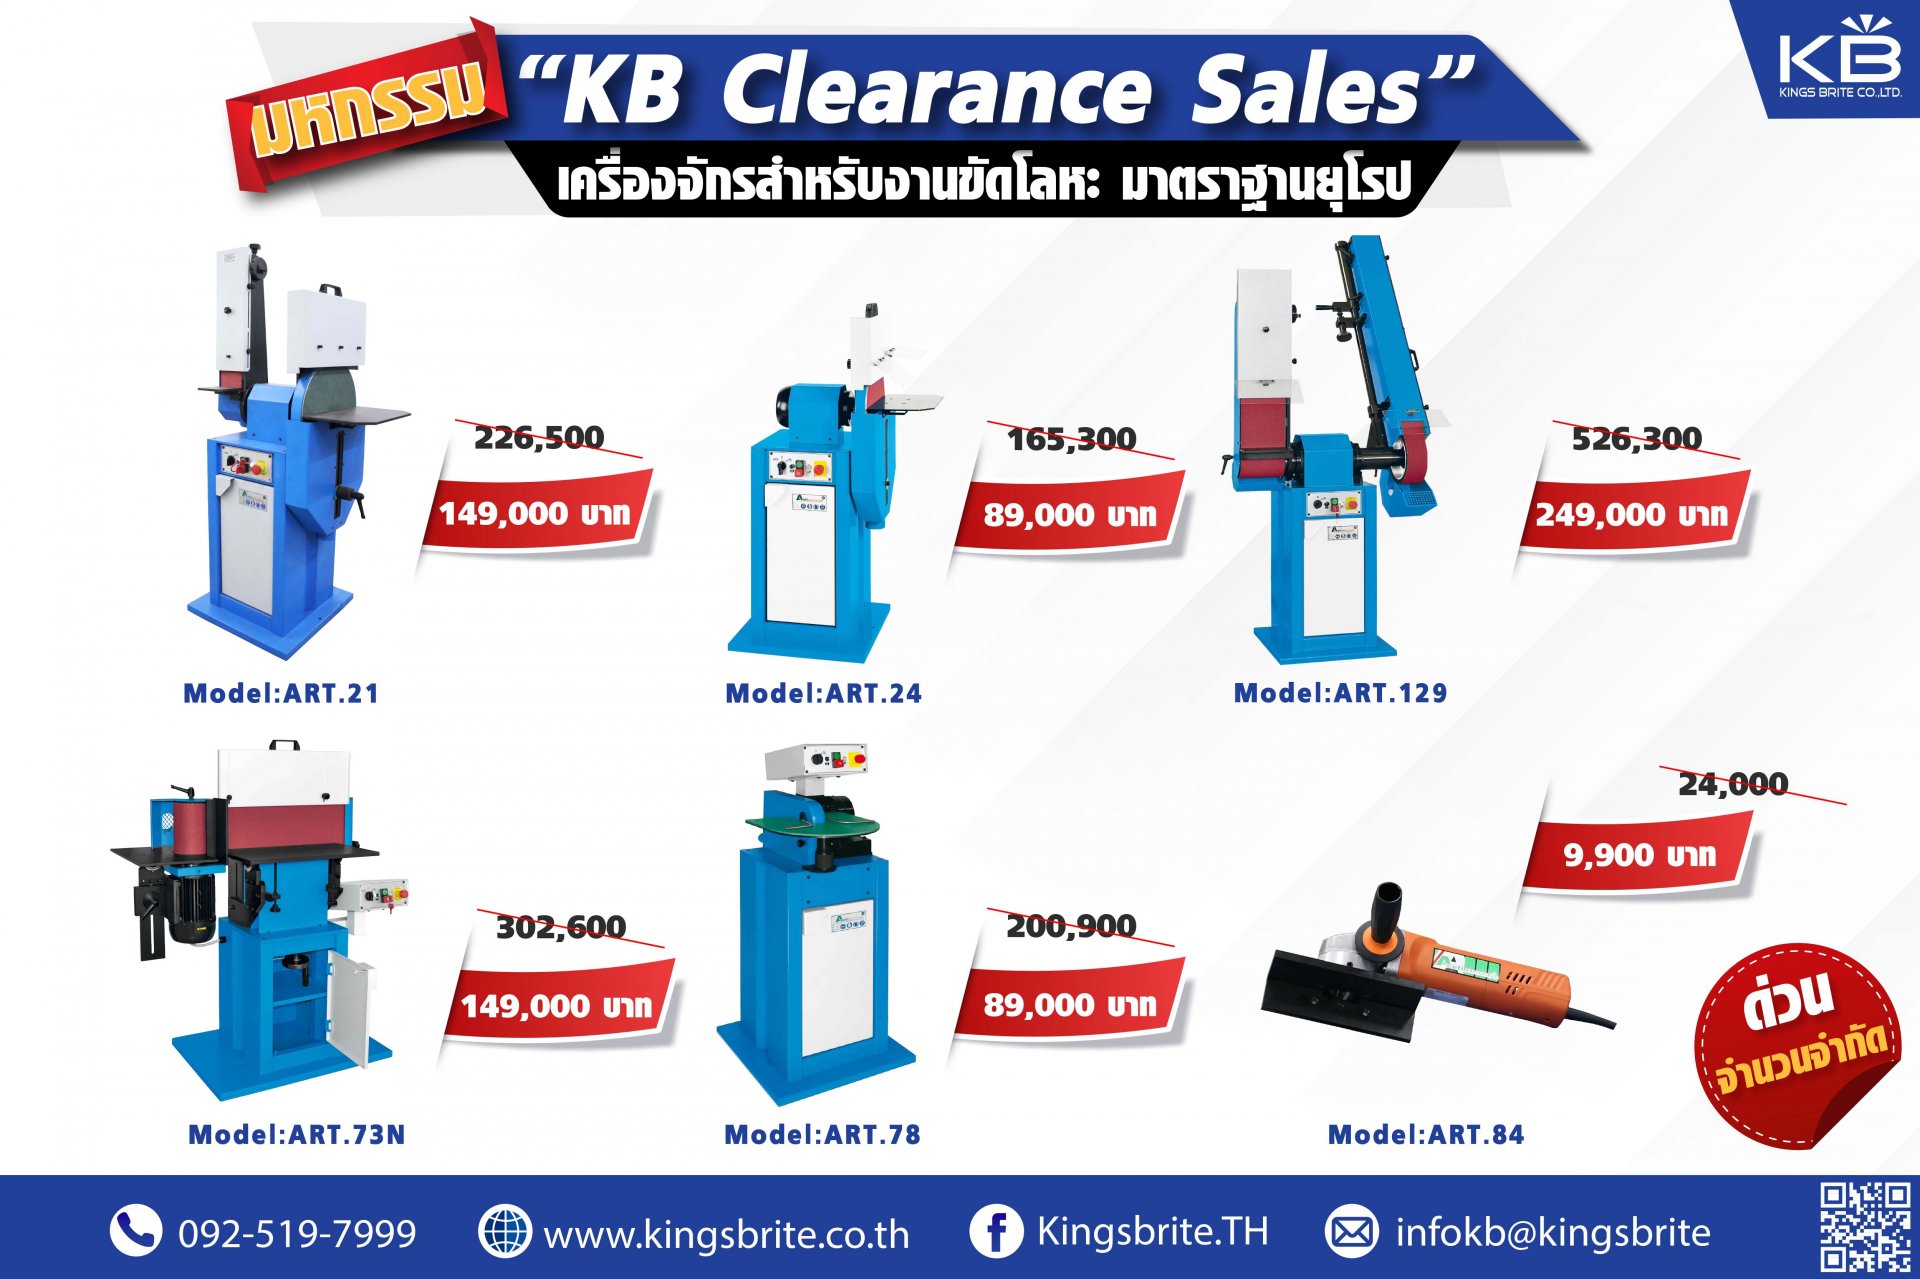 ลดกระหน่ำ‼ มหกรรม "KB Clearance Sales" เครื่องจักรงานขัด ลดสูงสุดกว่า 65%